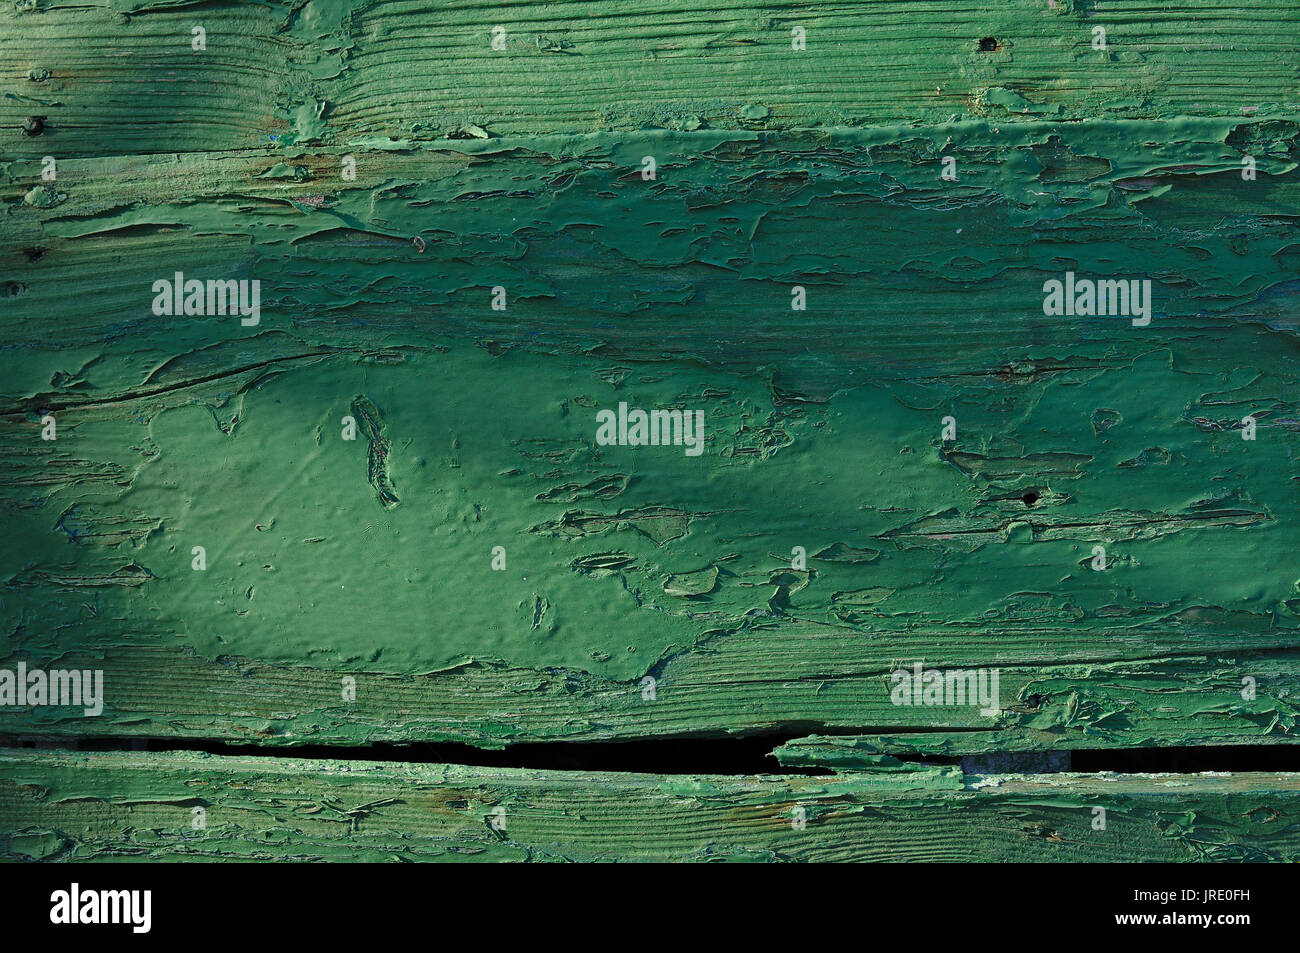 La texture en bois vert avec la peinture écaillée. coque de bateau en Algarve, PORTUGAL Banque D'Images